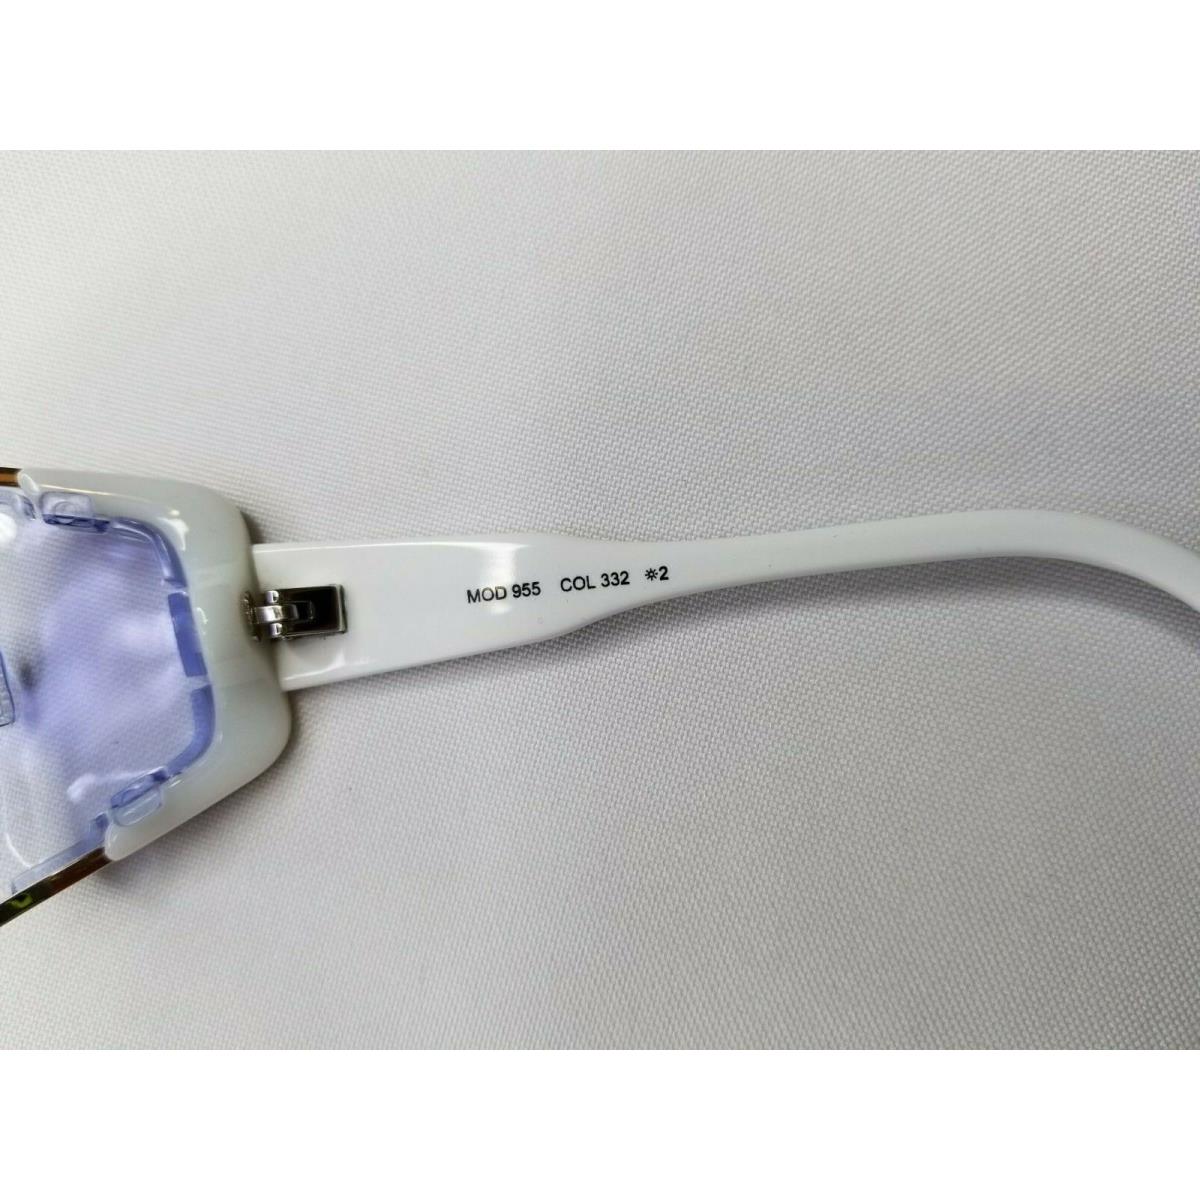 CAZAL NEW Cazal LEGENDS 955 Sunglasses COL.332 White-Gold/Blue gradient lenses new 